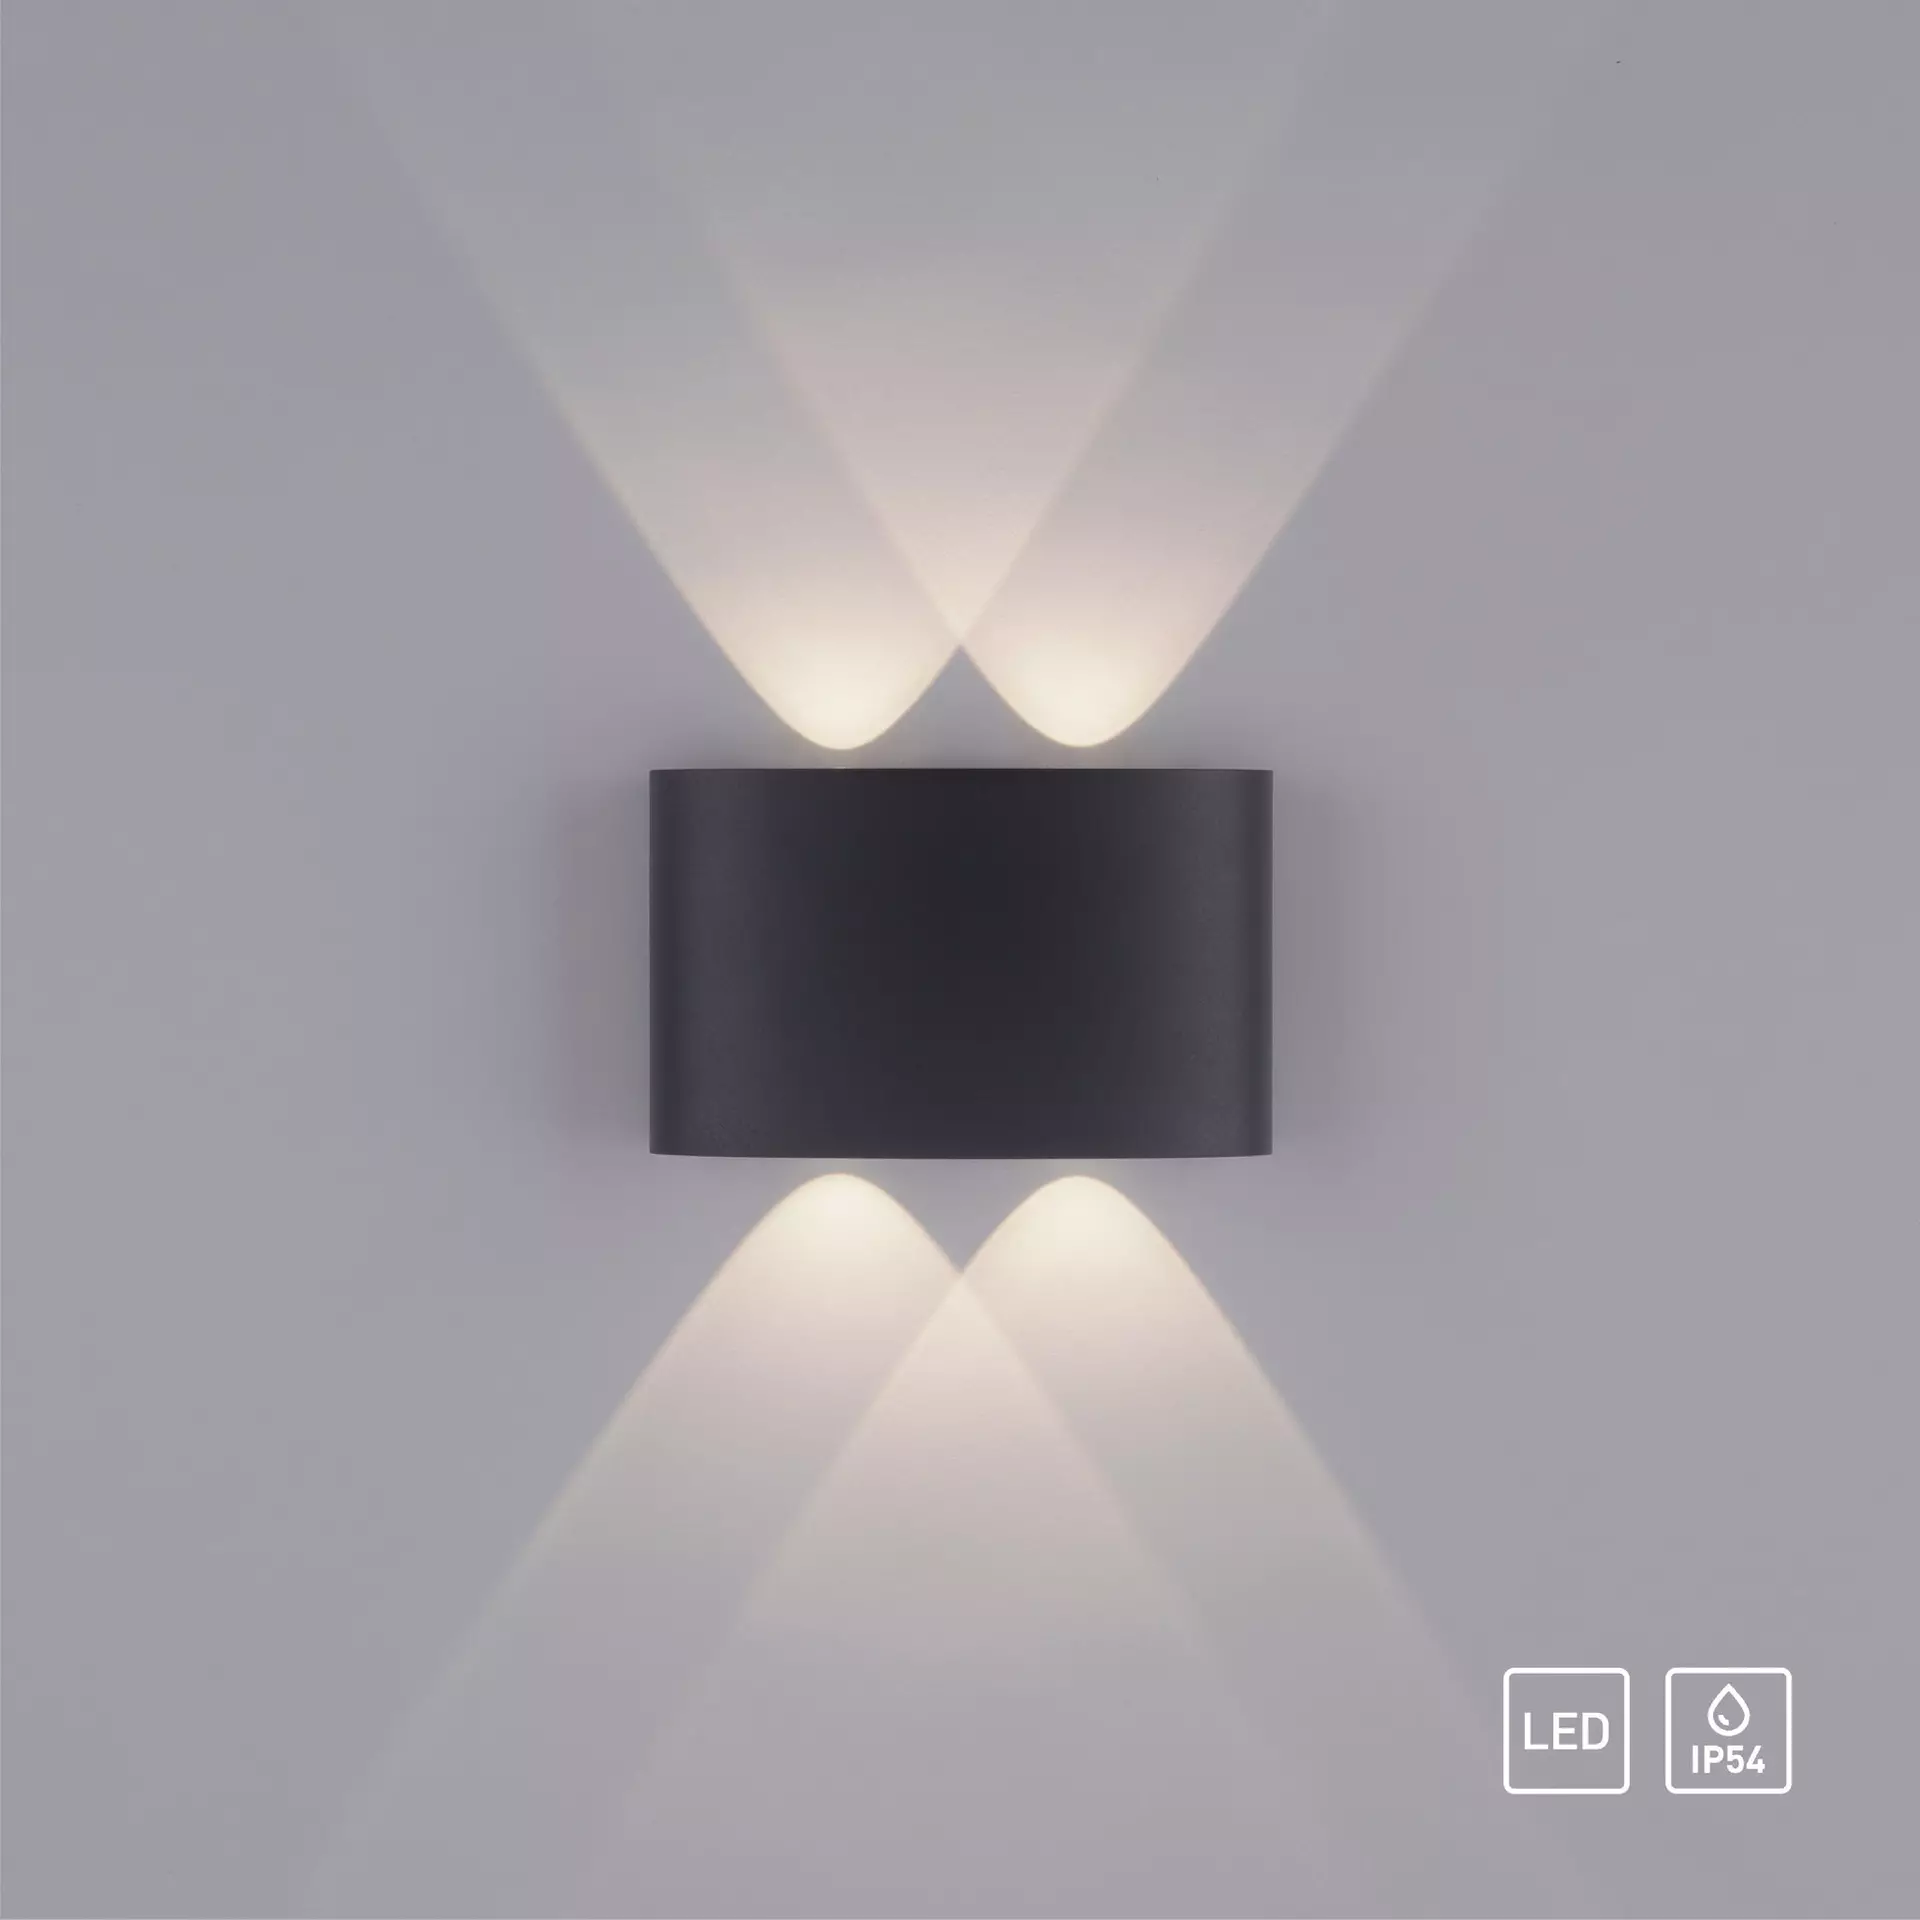 Wand-Aussenleuchte LED schwarz Möbel Inhofer 